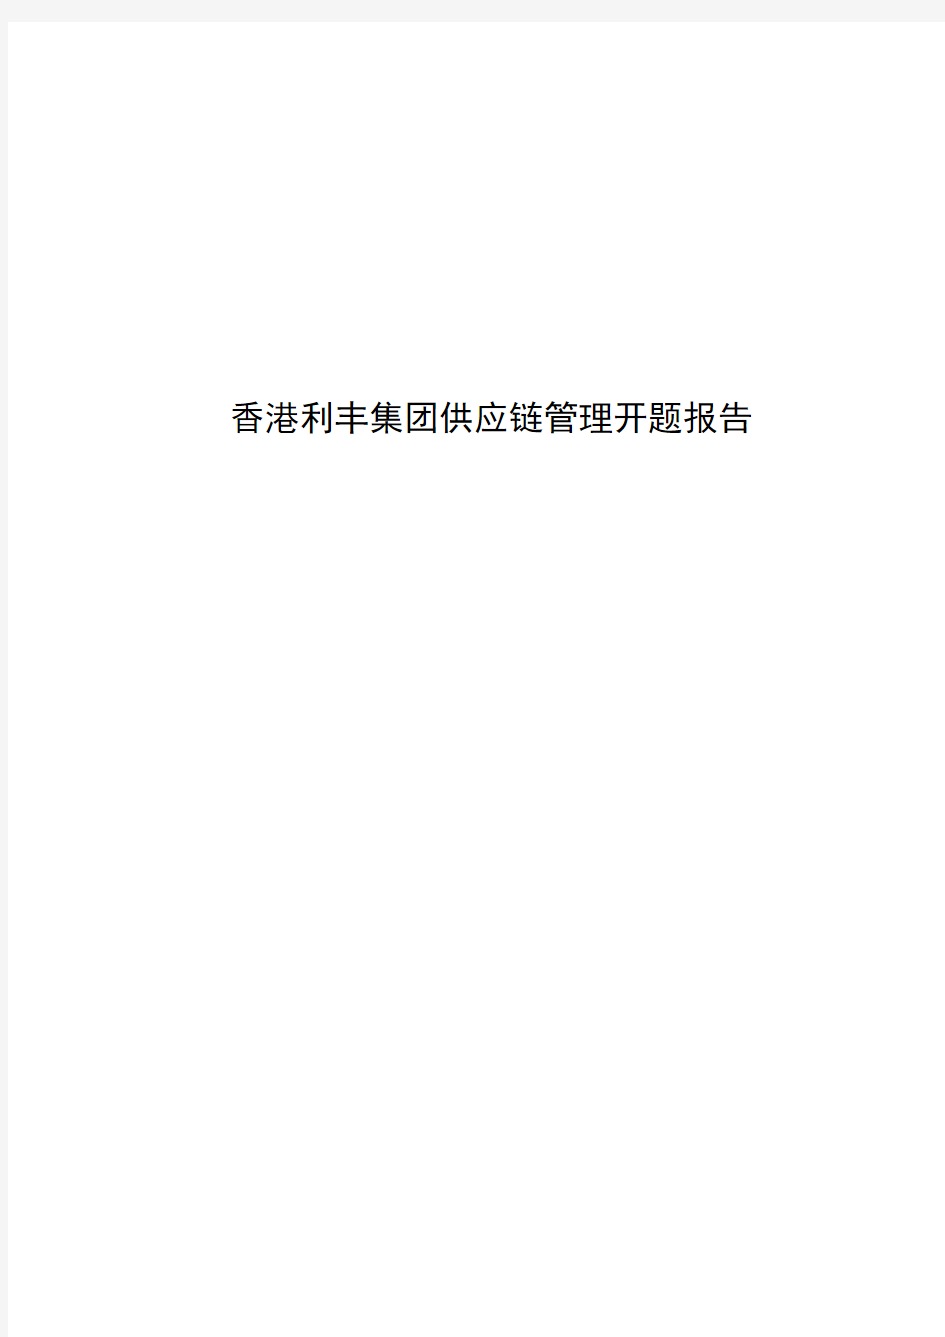 香港利丰集团供应链管理开题报告